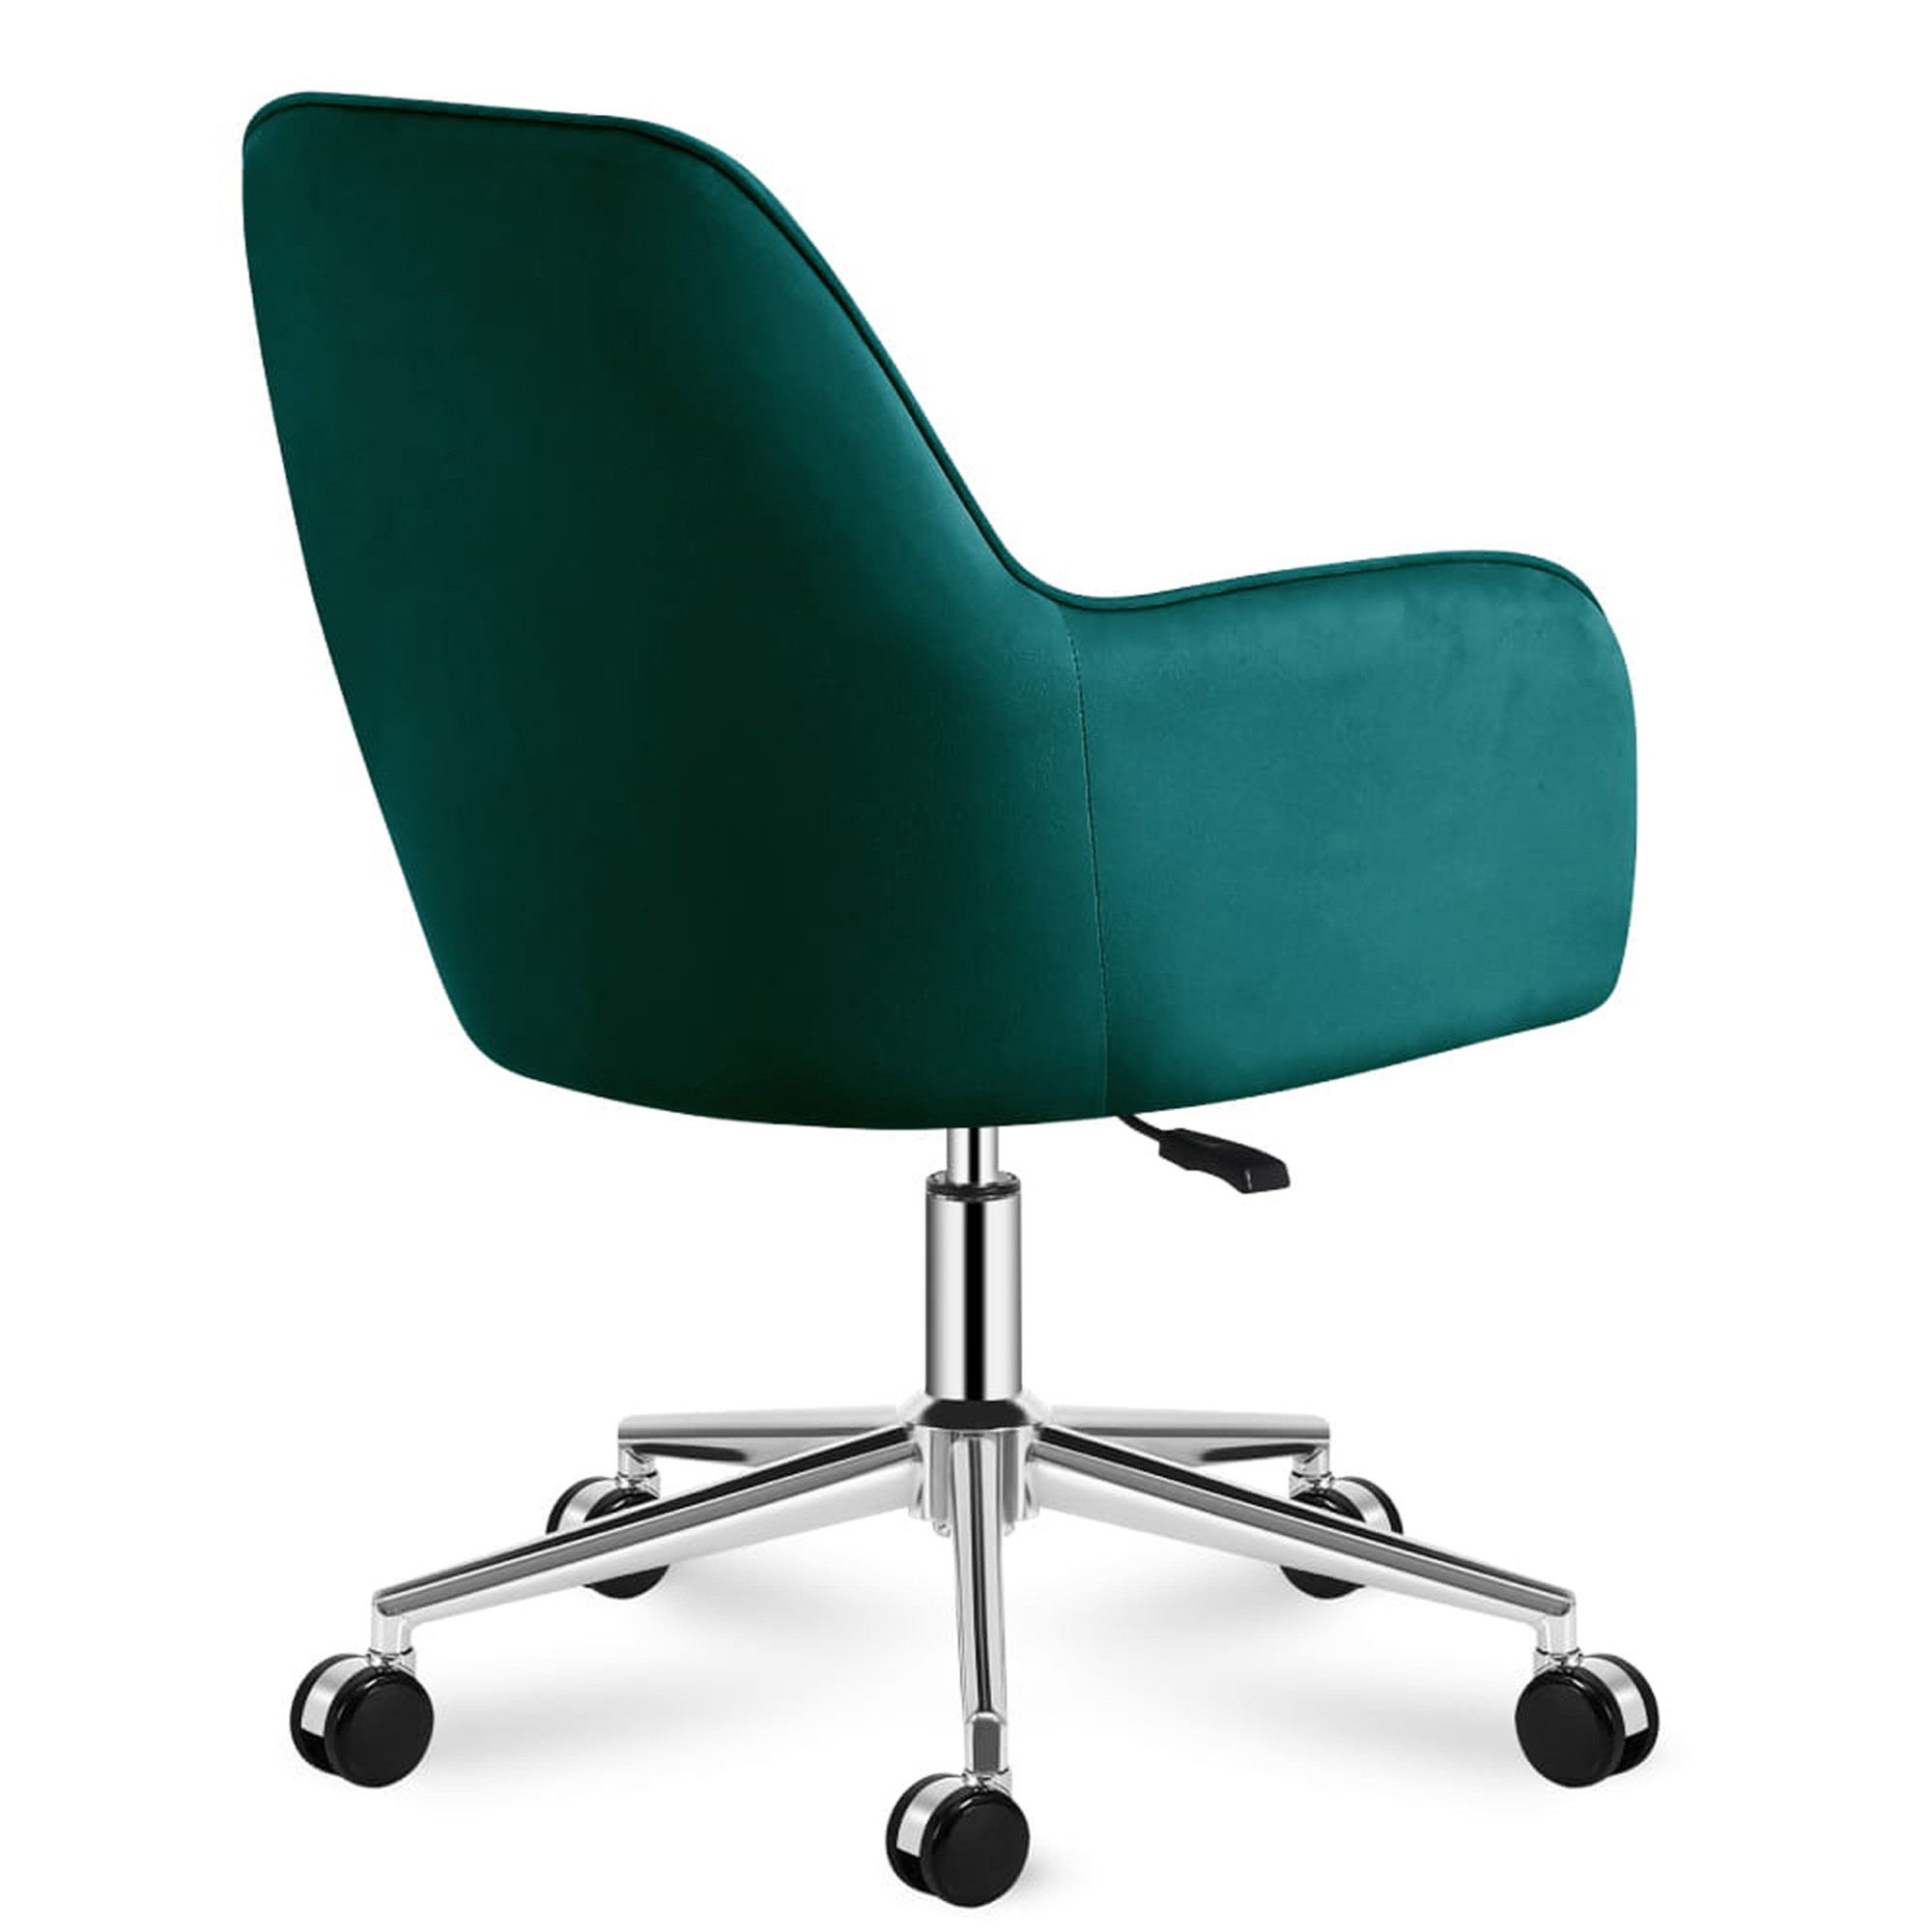 Kancelárska stolička Mark Adler - Future 5.2 zelená